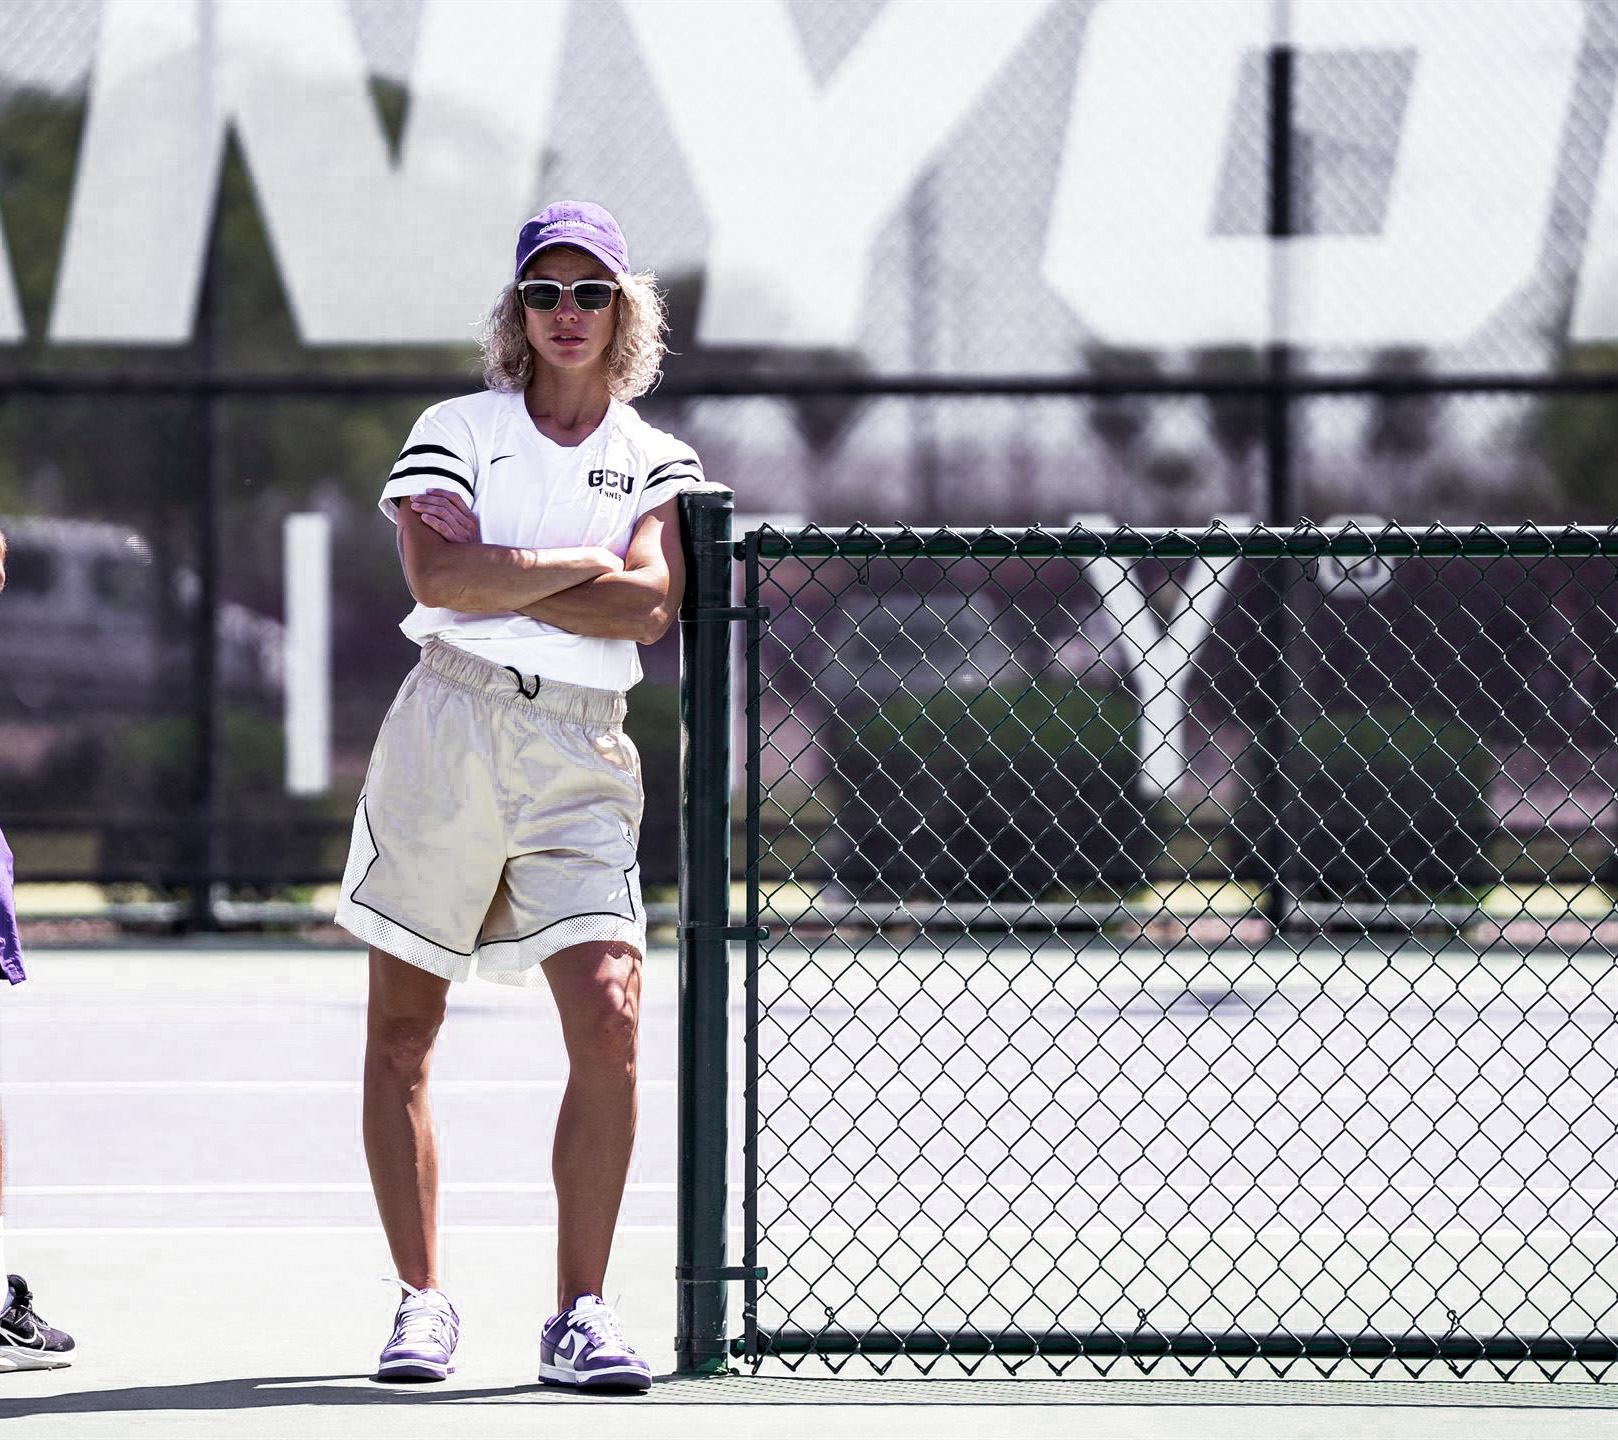 Katarina A. teaches tennis lessons in Phoenix, AZ